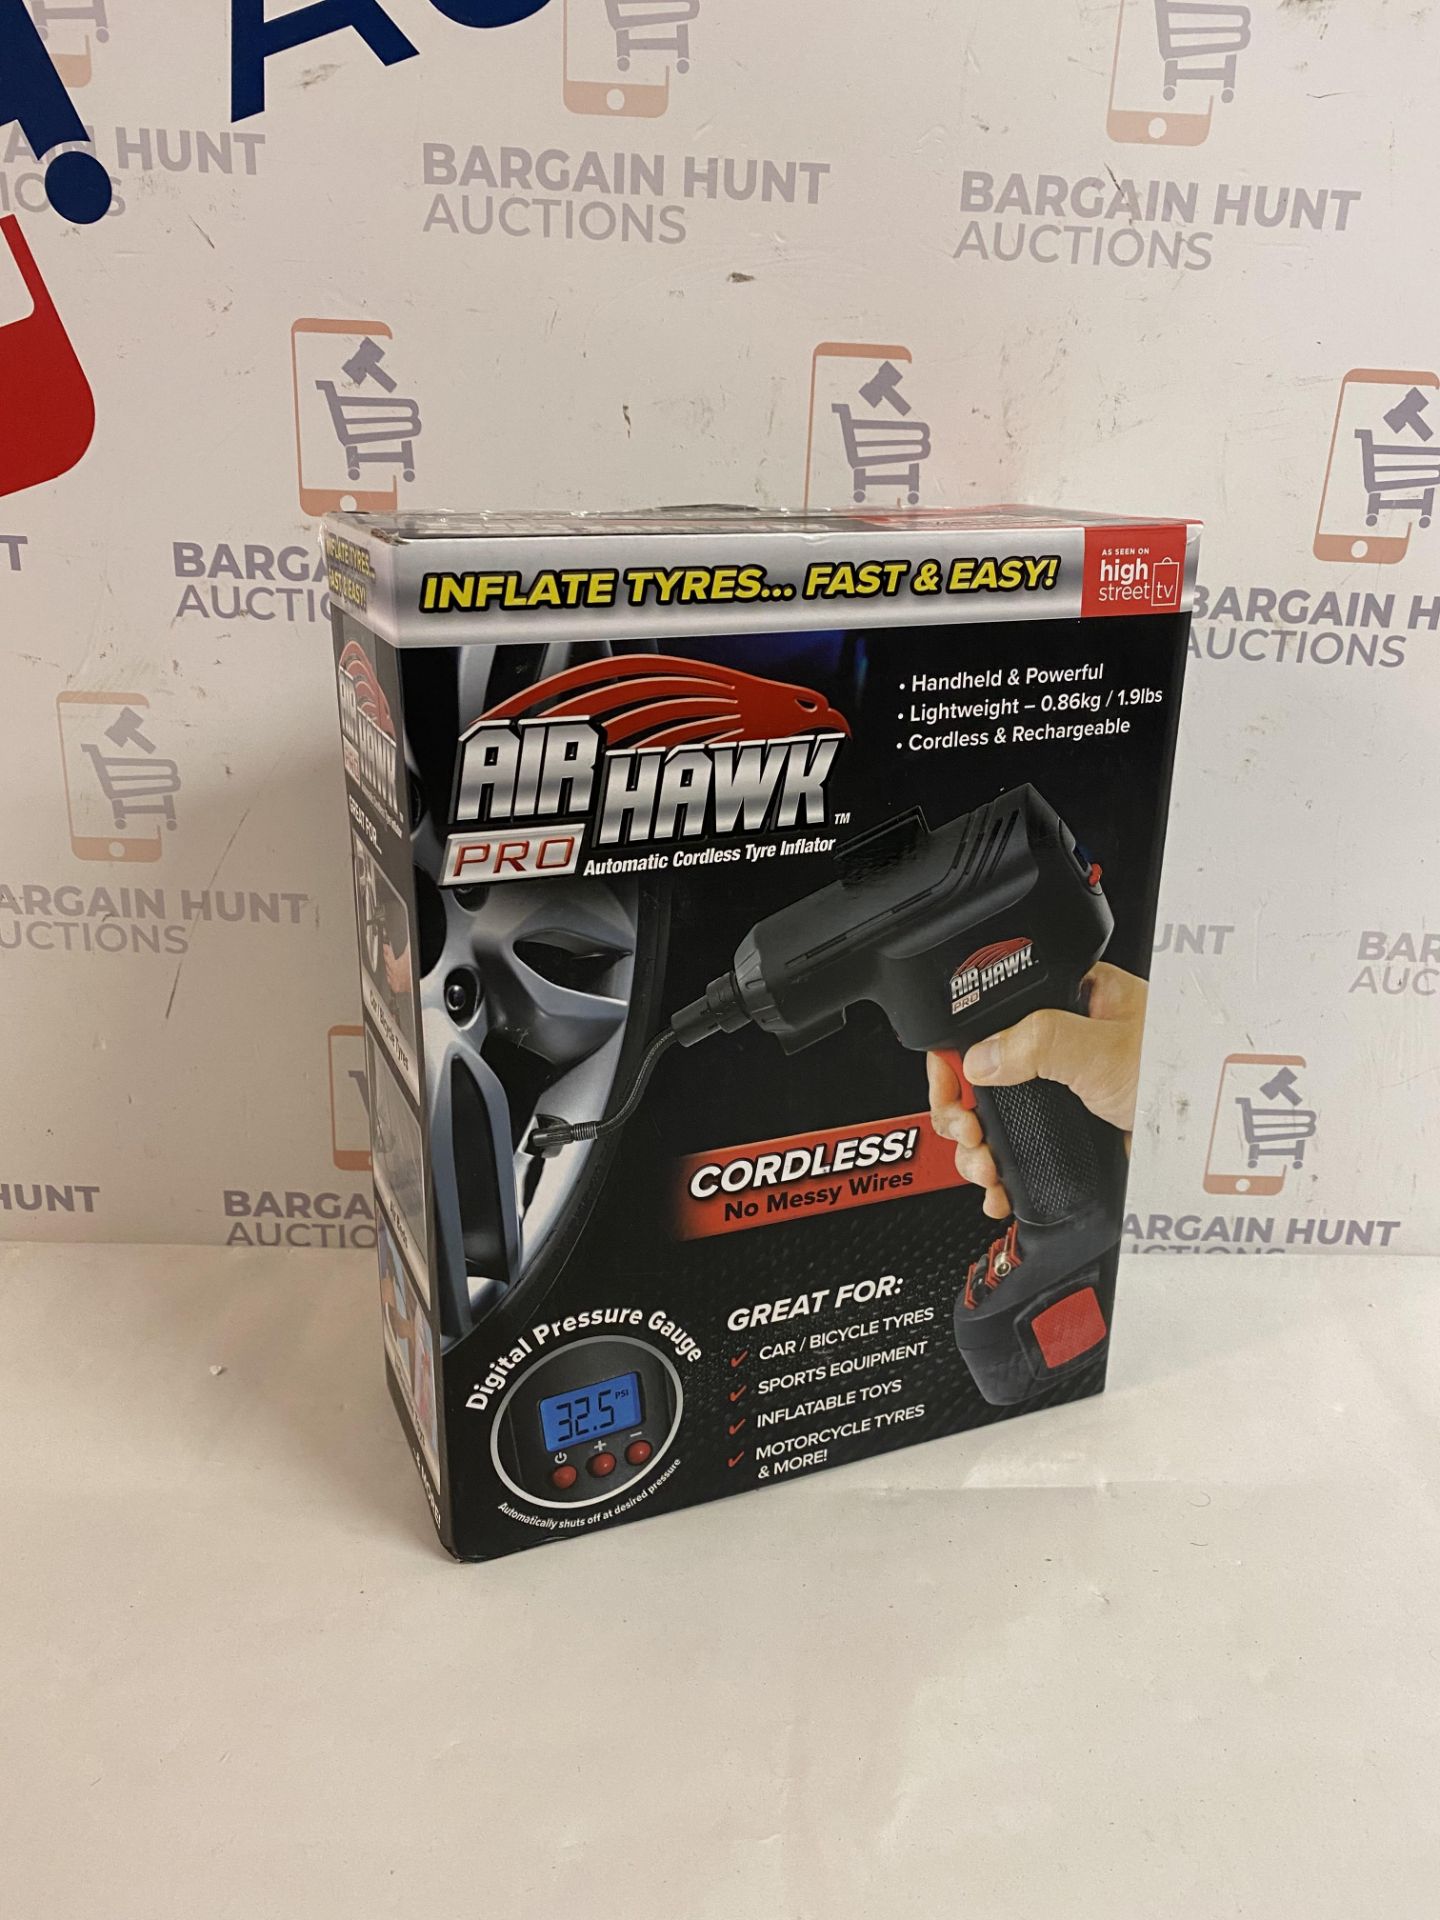 | 1x | Air Hawk Pro Compressor | Refurbished | No Online Resale | SKU 5060191466837 | RRP £49.99 |